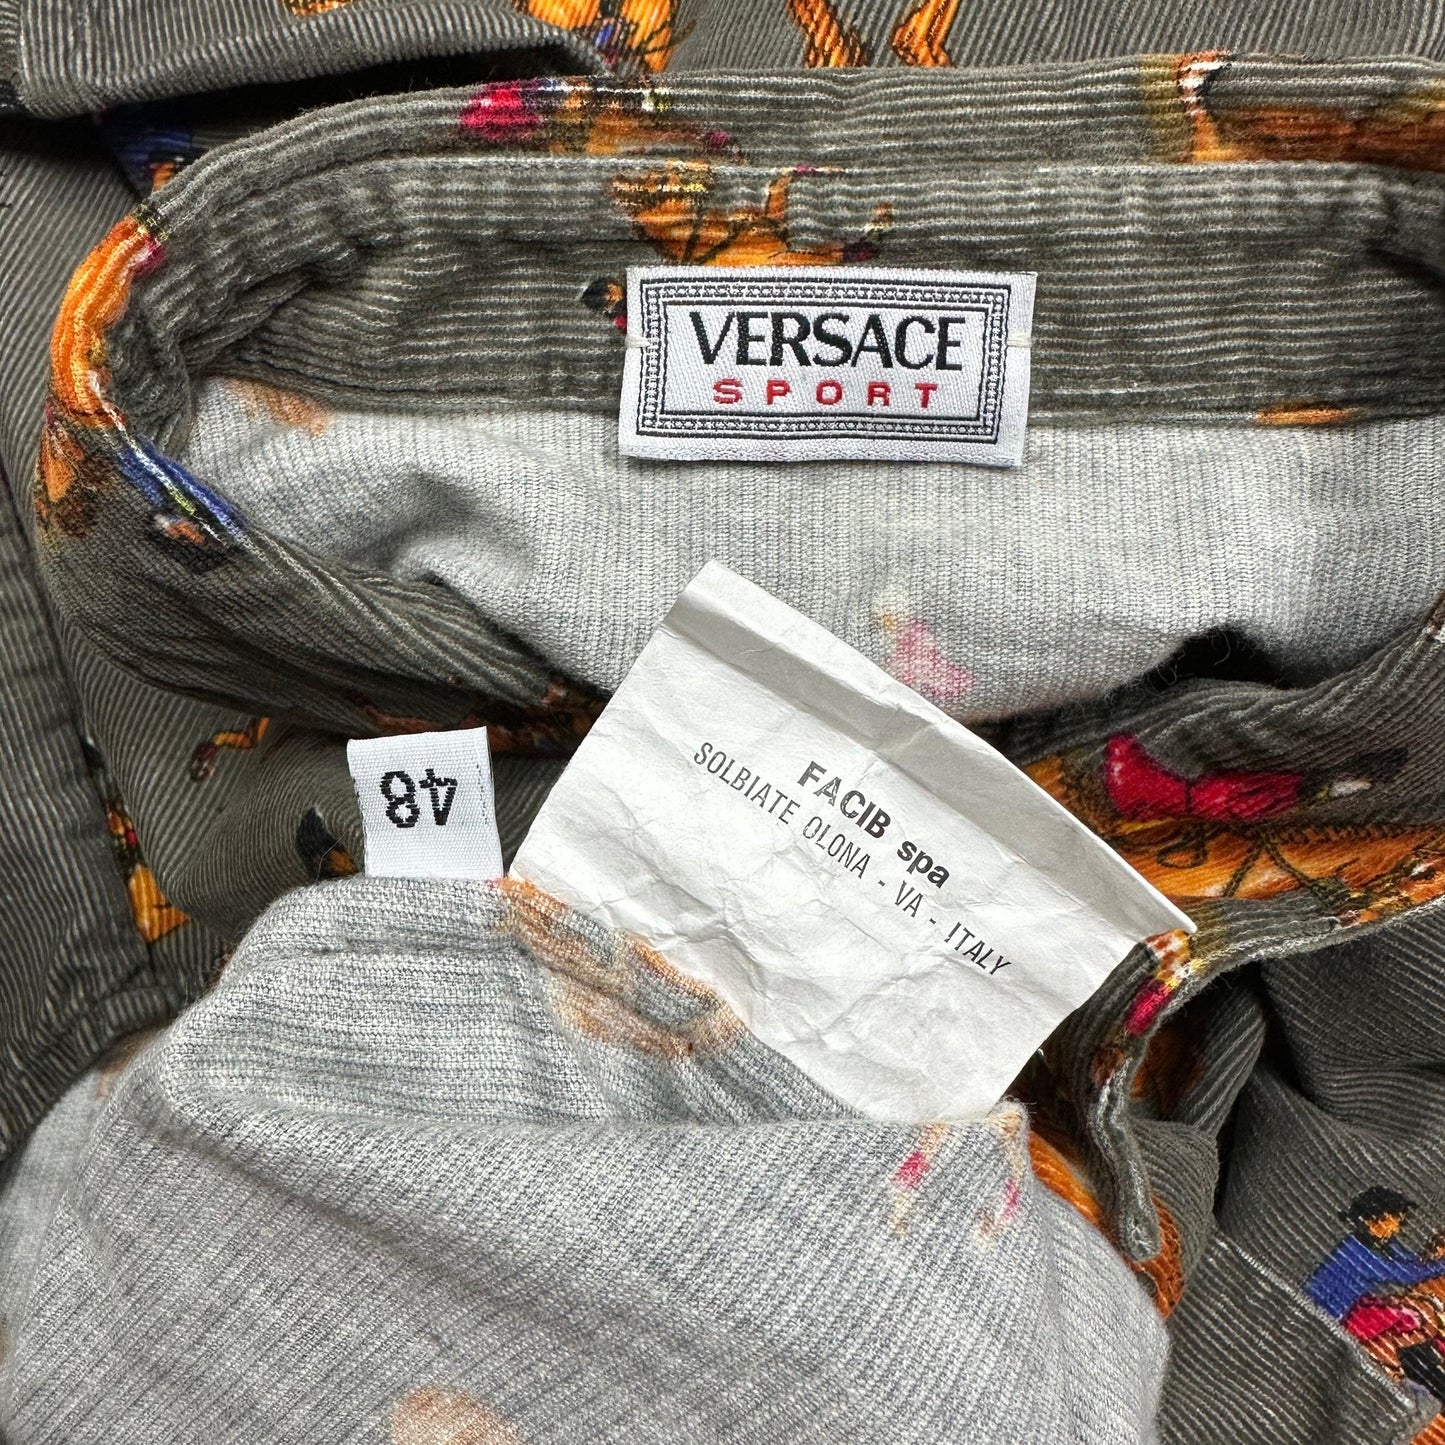 Versace Sport 90’s Corduroy Horses Double Pocket Shirt - L - Known Source